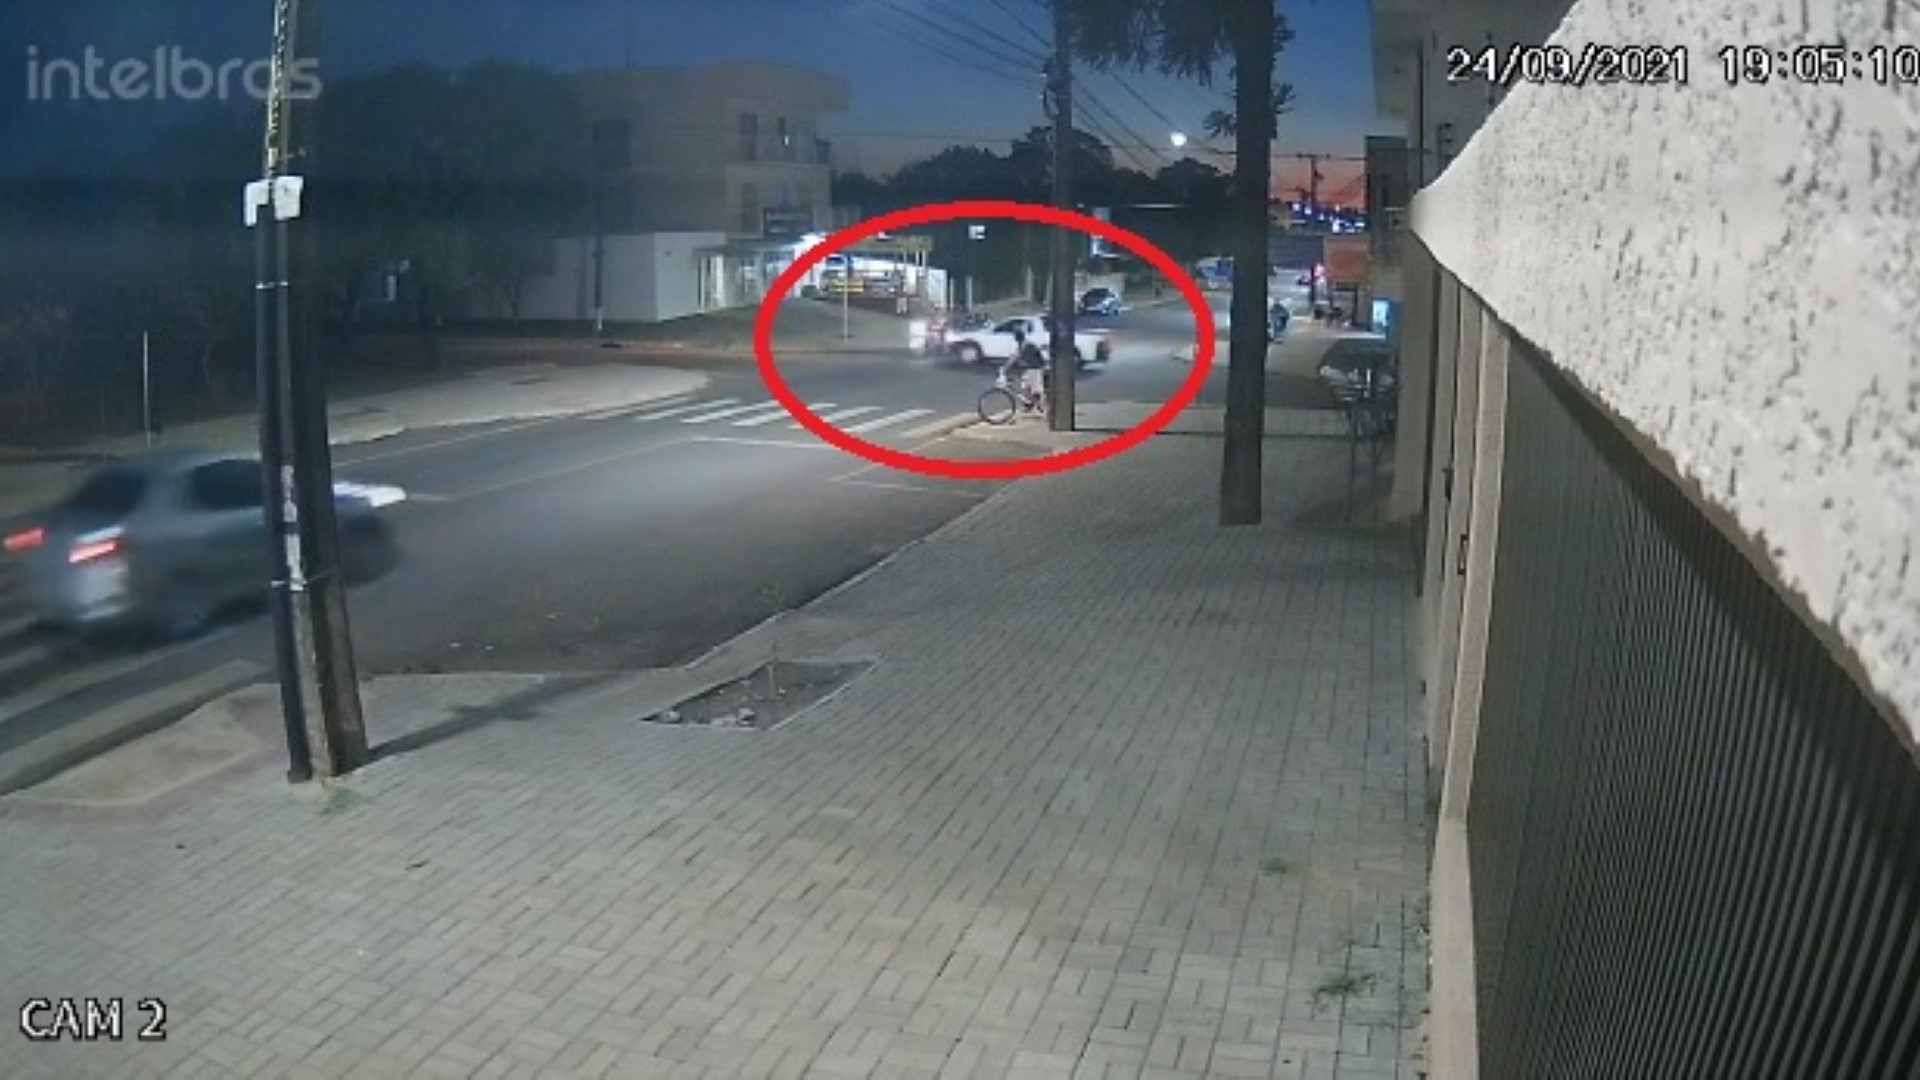 Vídeo mostra acidente entre motocicleta e utilitário no Bairro Cascavel Velho